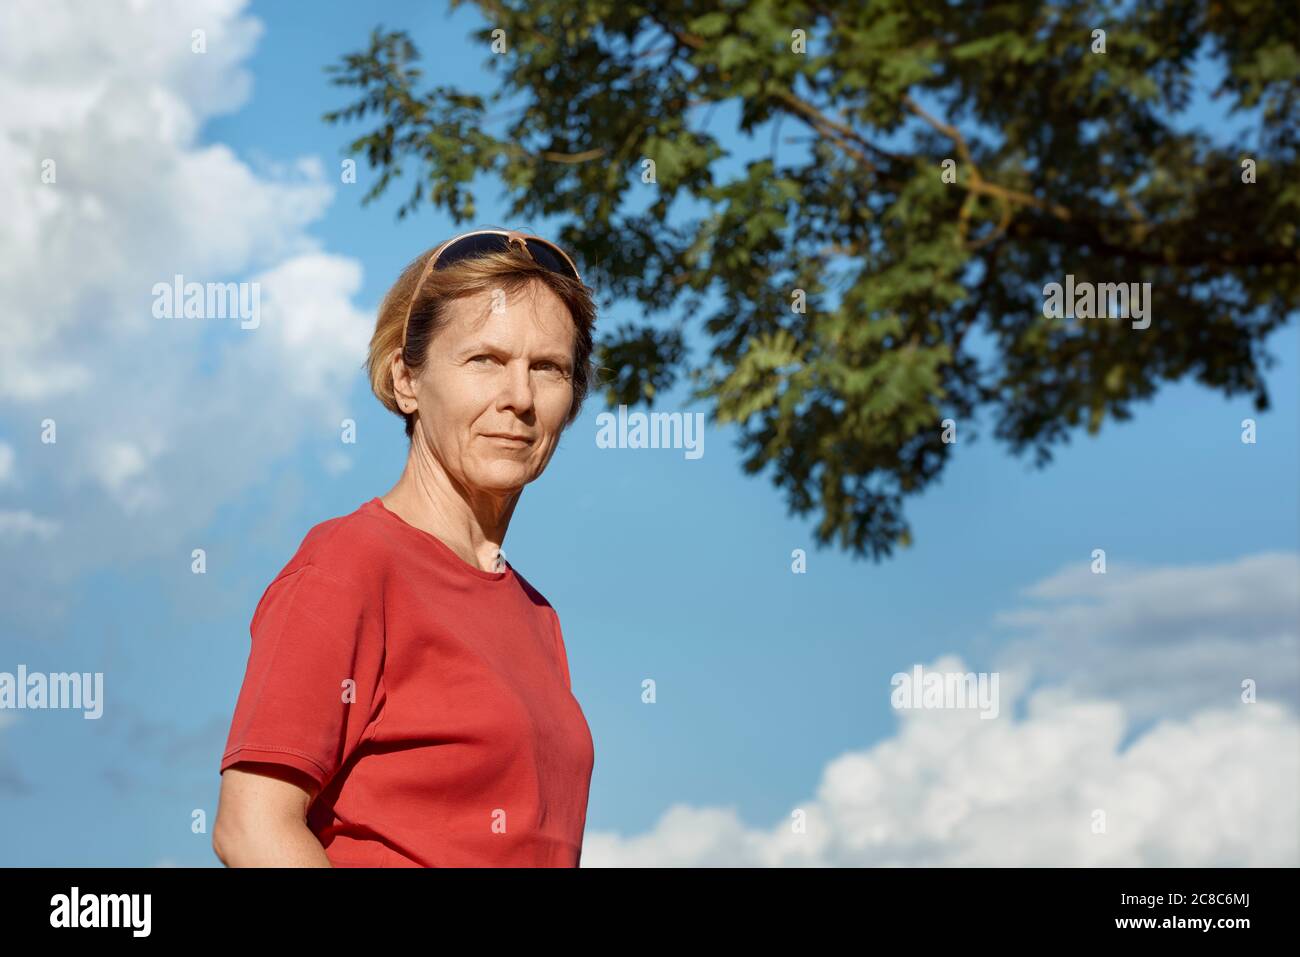 Ritratto di una donna di mezza età in una T-shirt rossa in bel tempo, all'esterno. Foto Stock